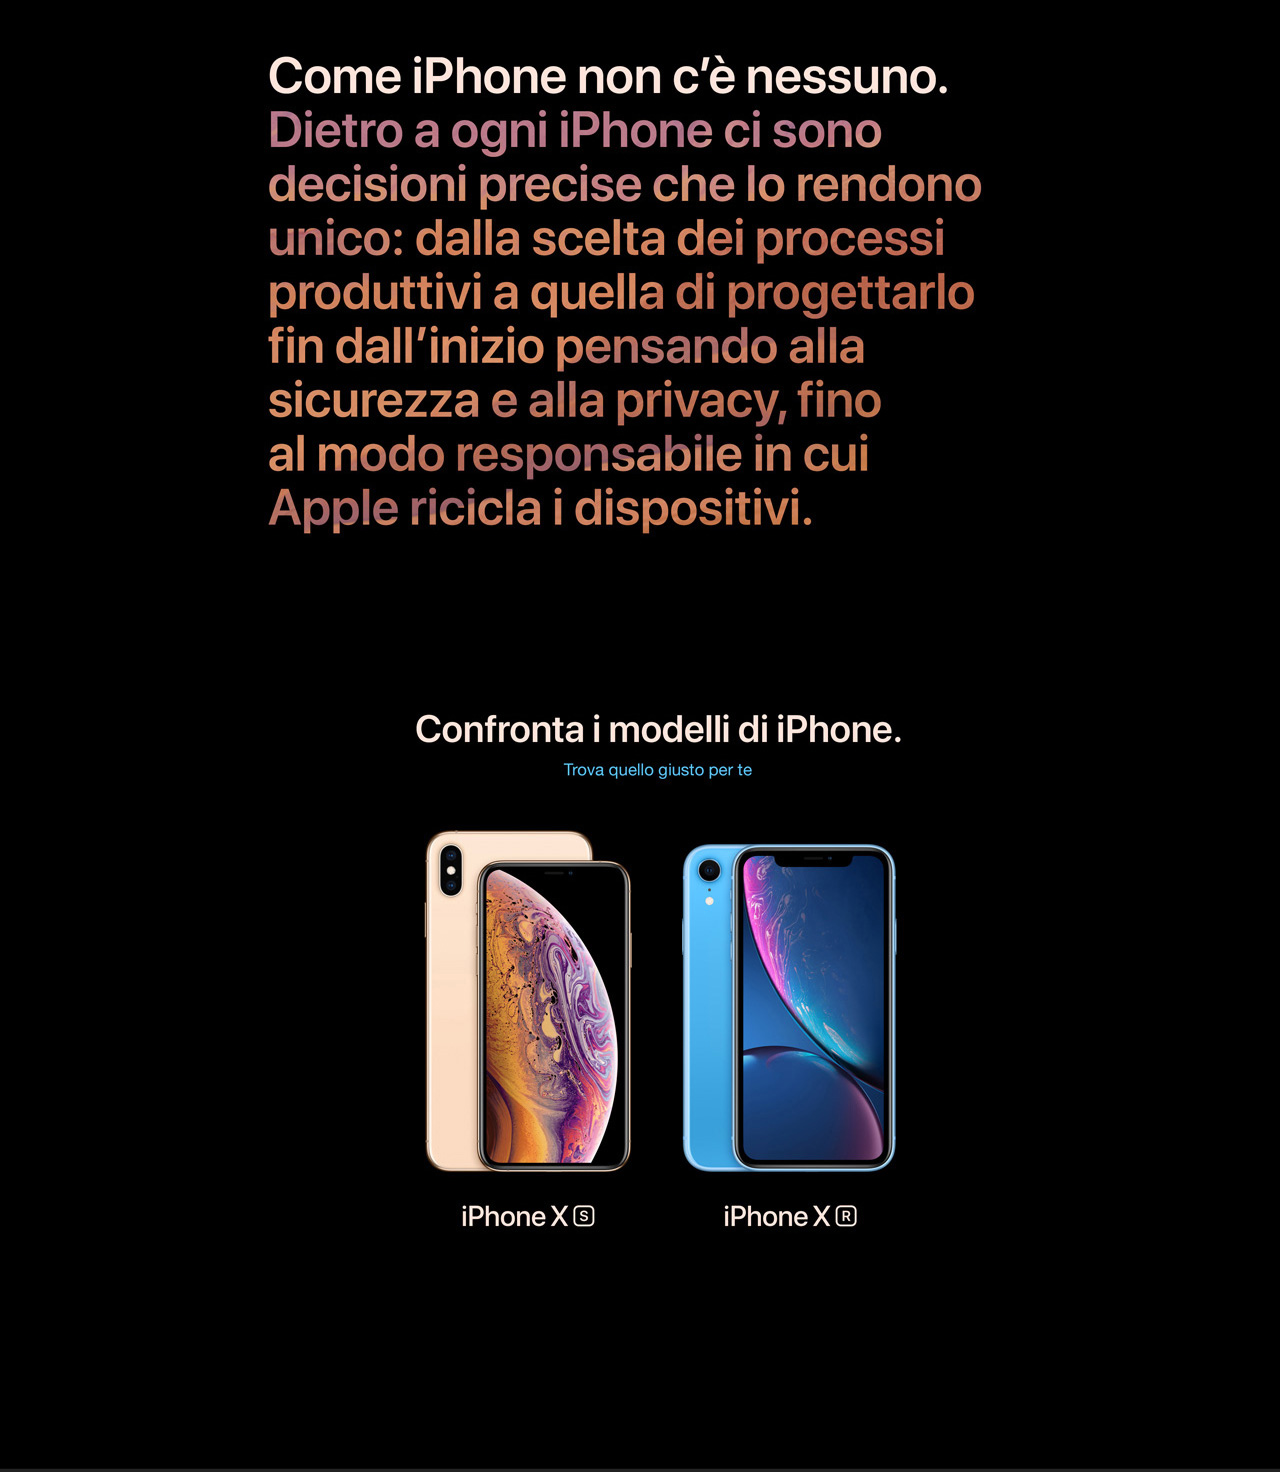 iPhone XR con Iliad